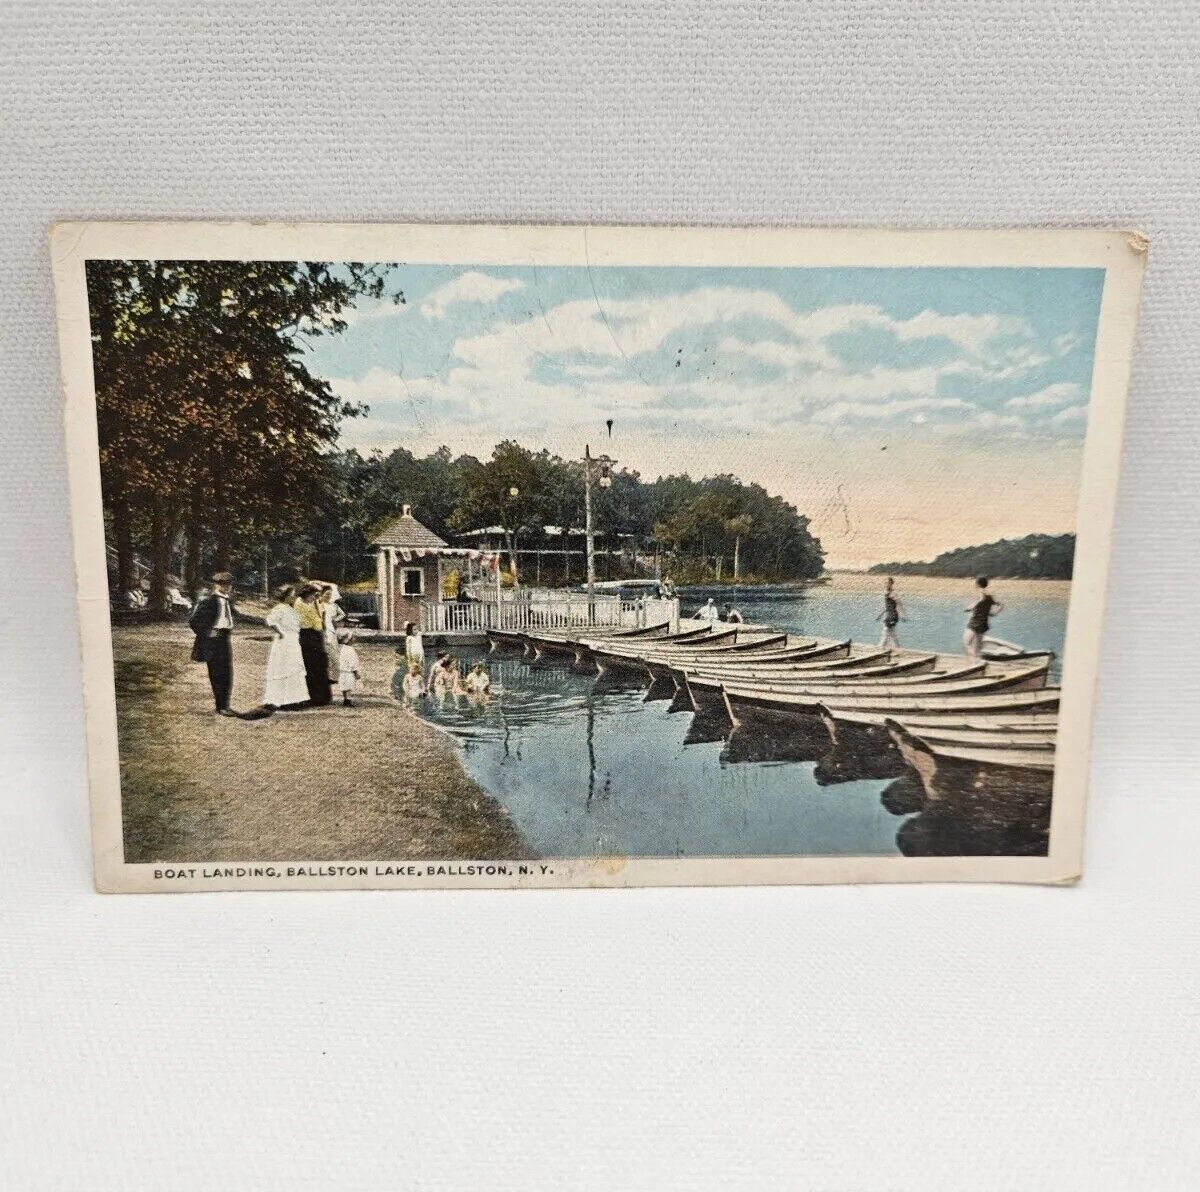 Vintage Postcard Of Ballston Lake Ballston New York. Postmarked 1919.